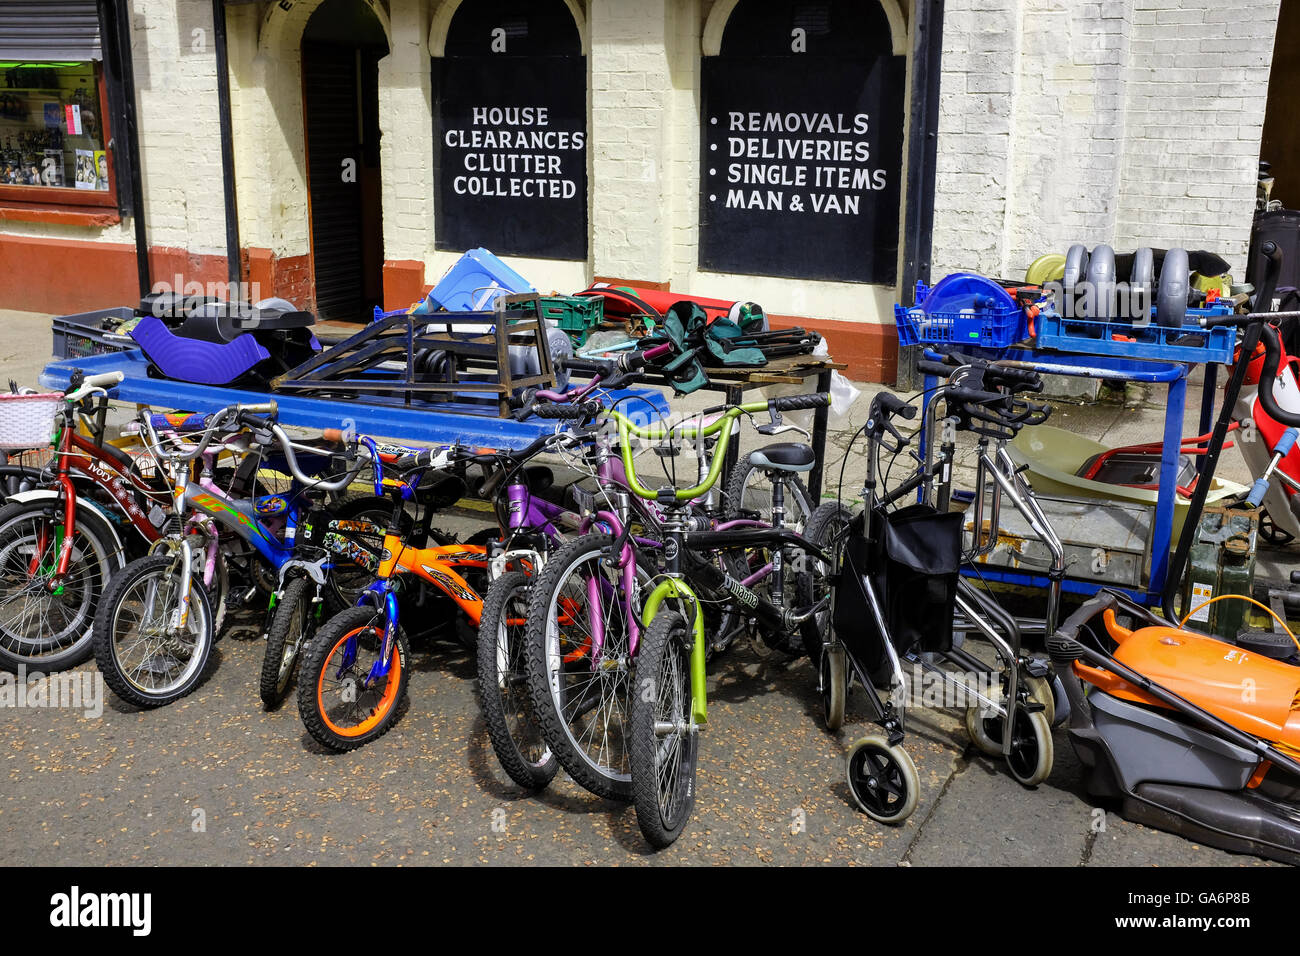 Bicyclettes, bric-à-brac et d'usage domestique général des marchandises pour la vente à l'extérieur d'un magasin de vente d'autres marchandises non désirées et d'ordure, Glasgow, Scotla Banque D'Images